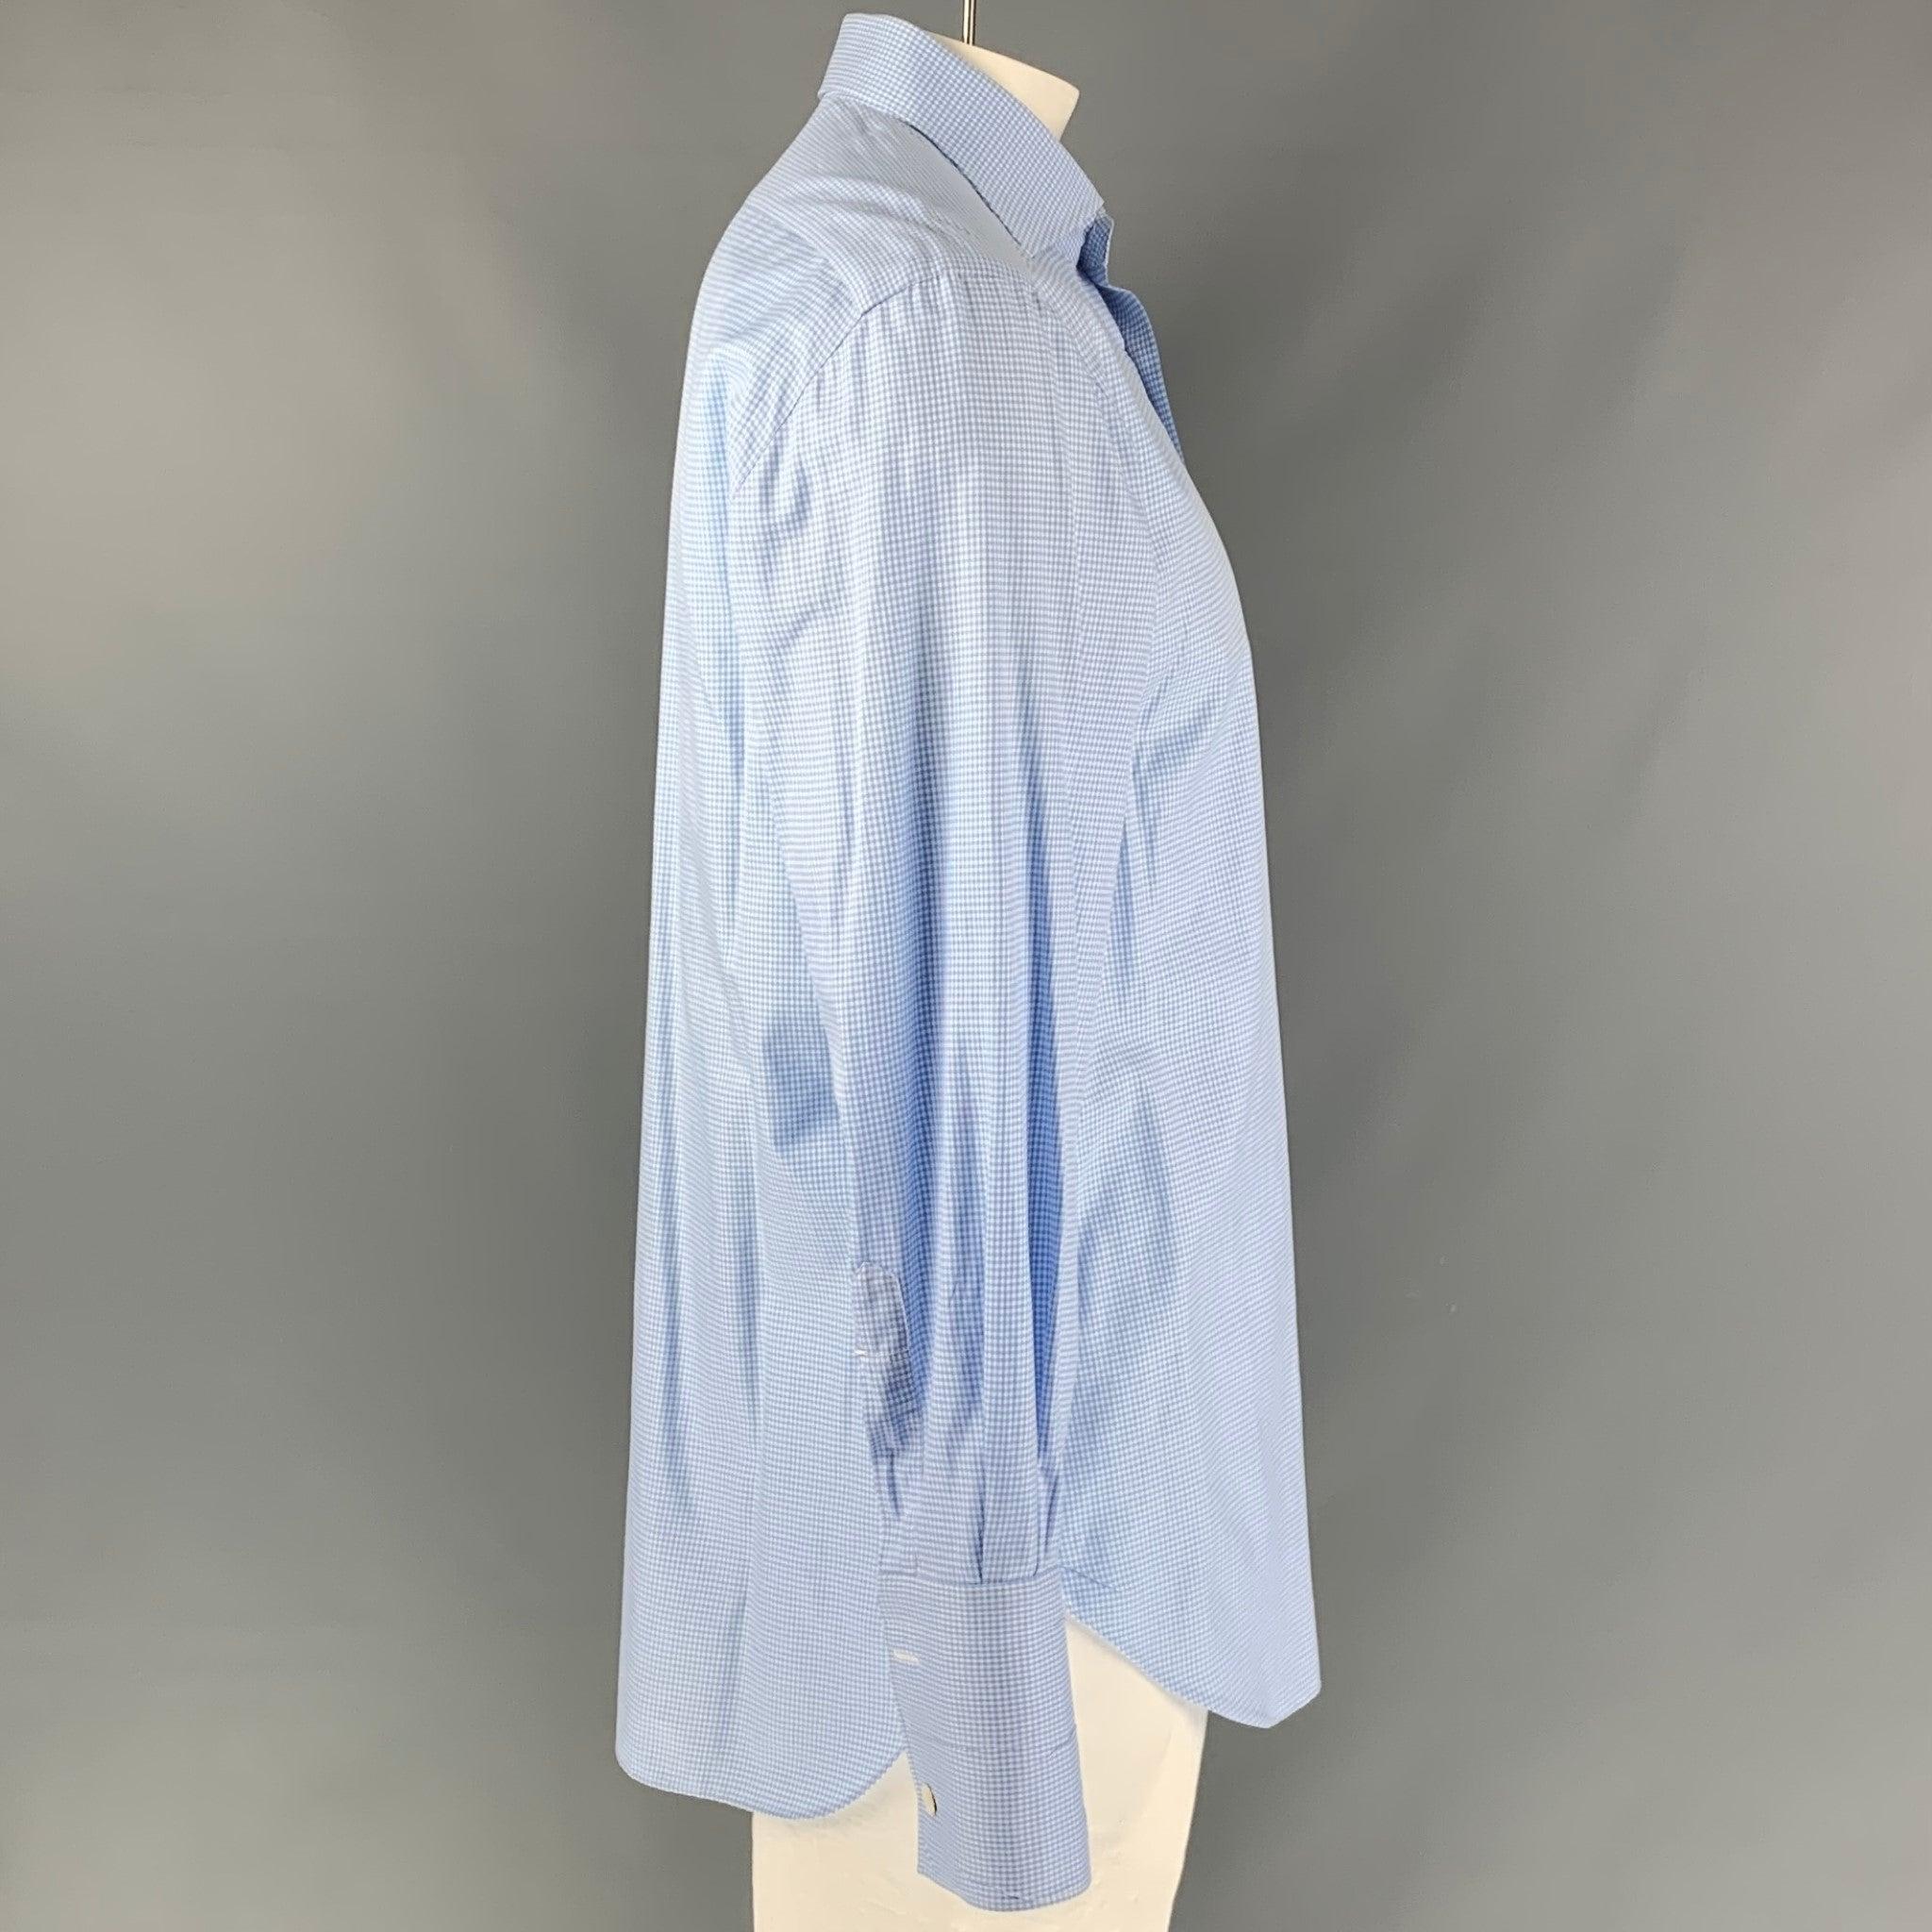 La chemise à manches longues KITON est en coton vichy blanc et bleu clair. Elle présente un col rond et se ferme à l'aide d'un bouton. Fabriqué en Italie. Excellent état.  

Marqué :   43-17 

Mesures : 
 
Epaule : 20 pouces Poitrine : 48 pouces